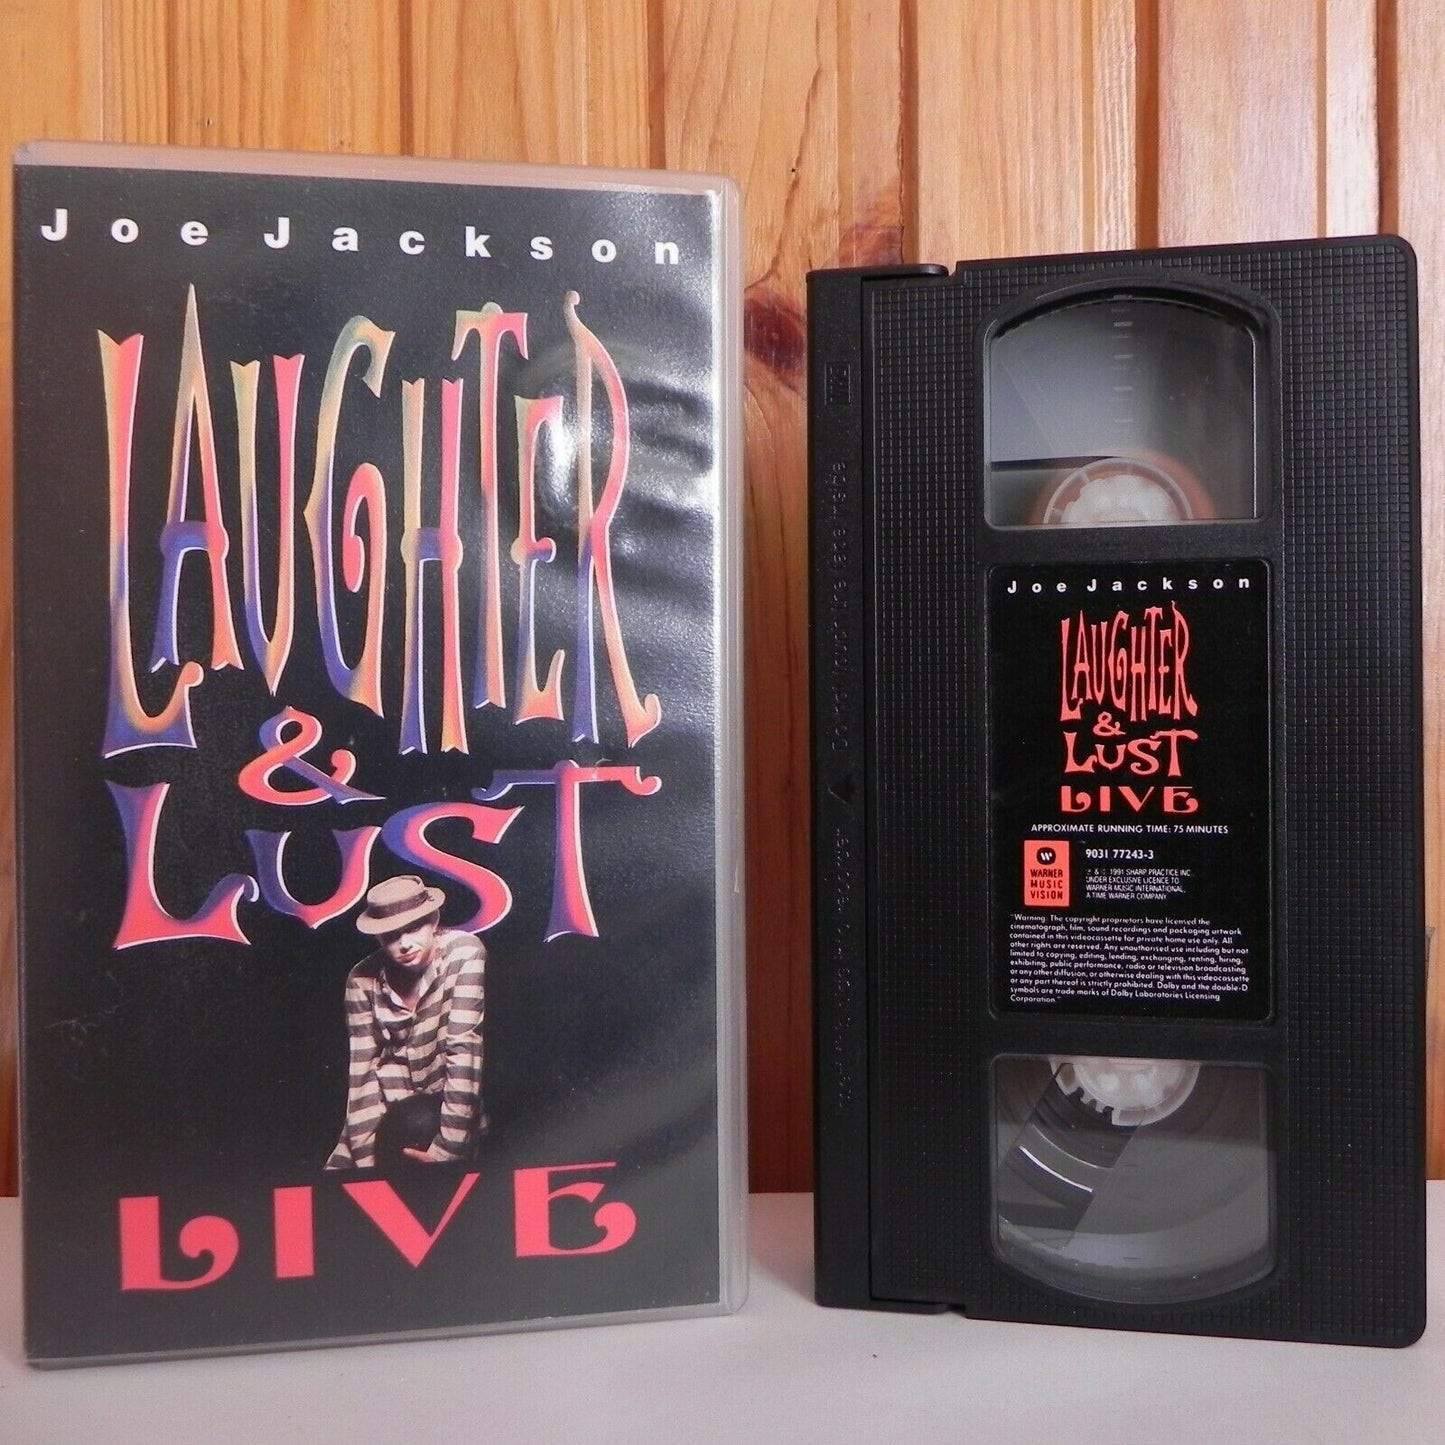 Joe Jackson: Laughter And Lust Live - Sydney - 20 September 1991 - Pal VHS-